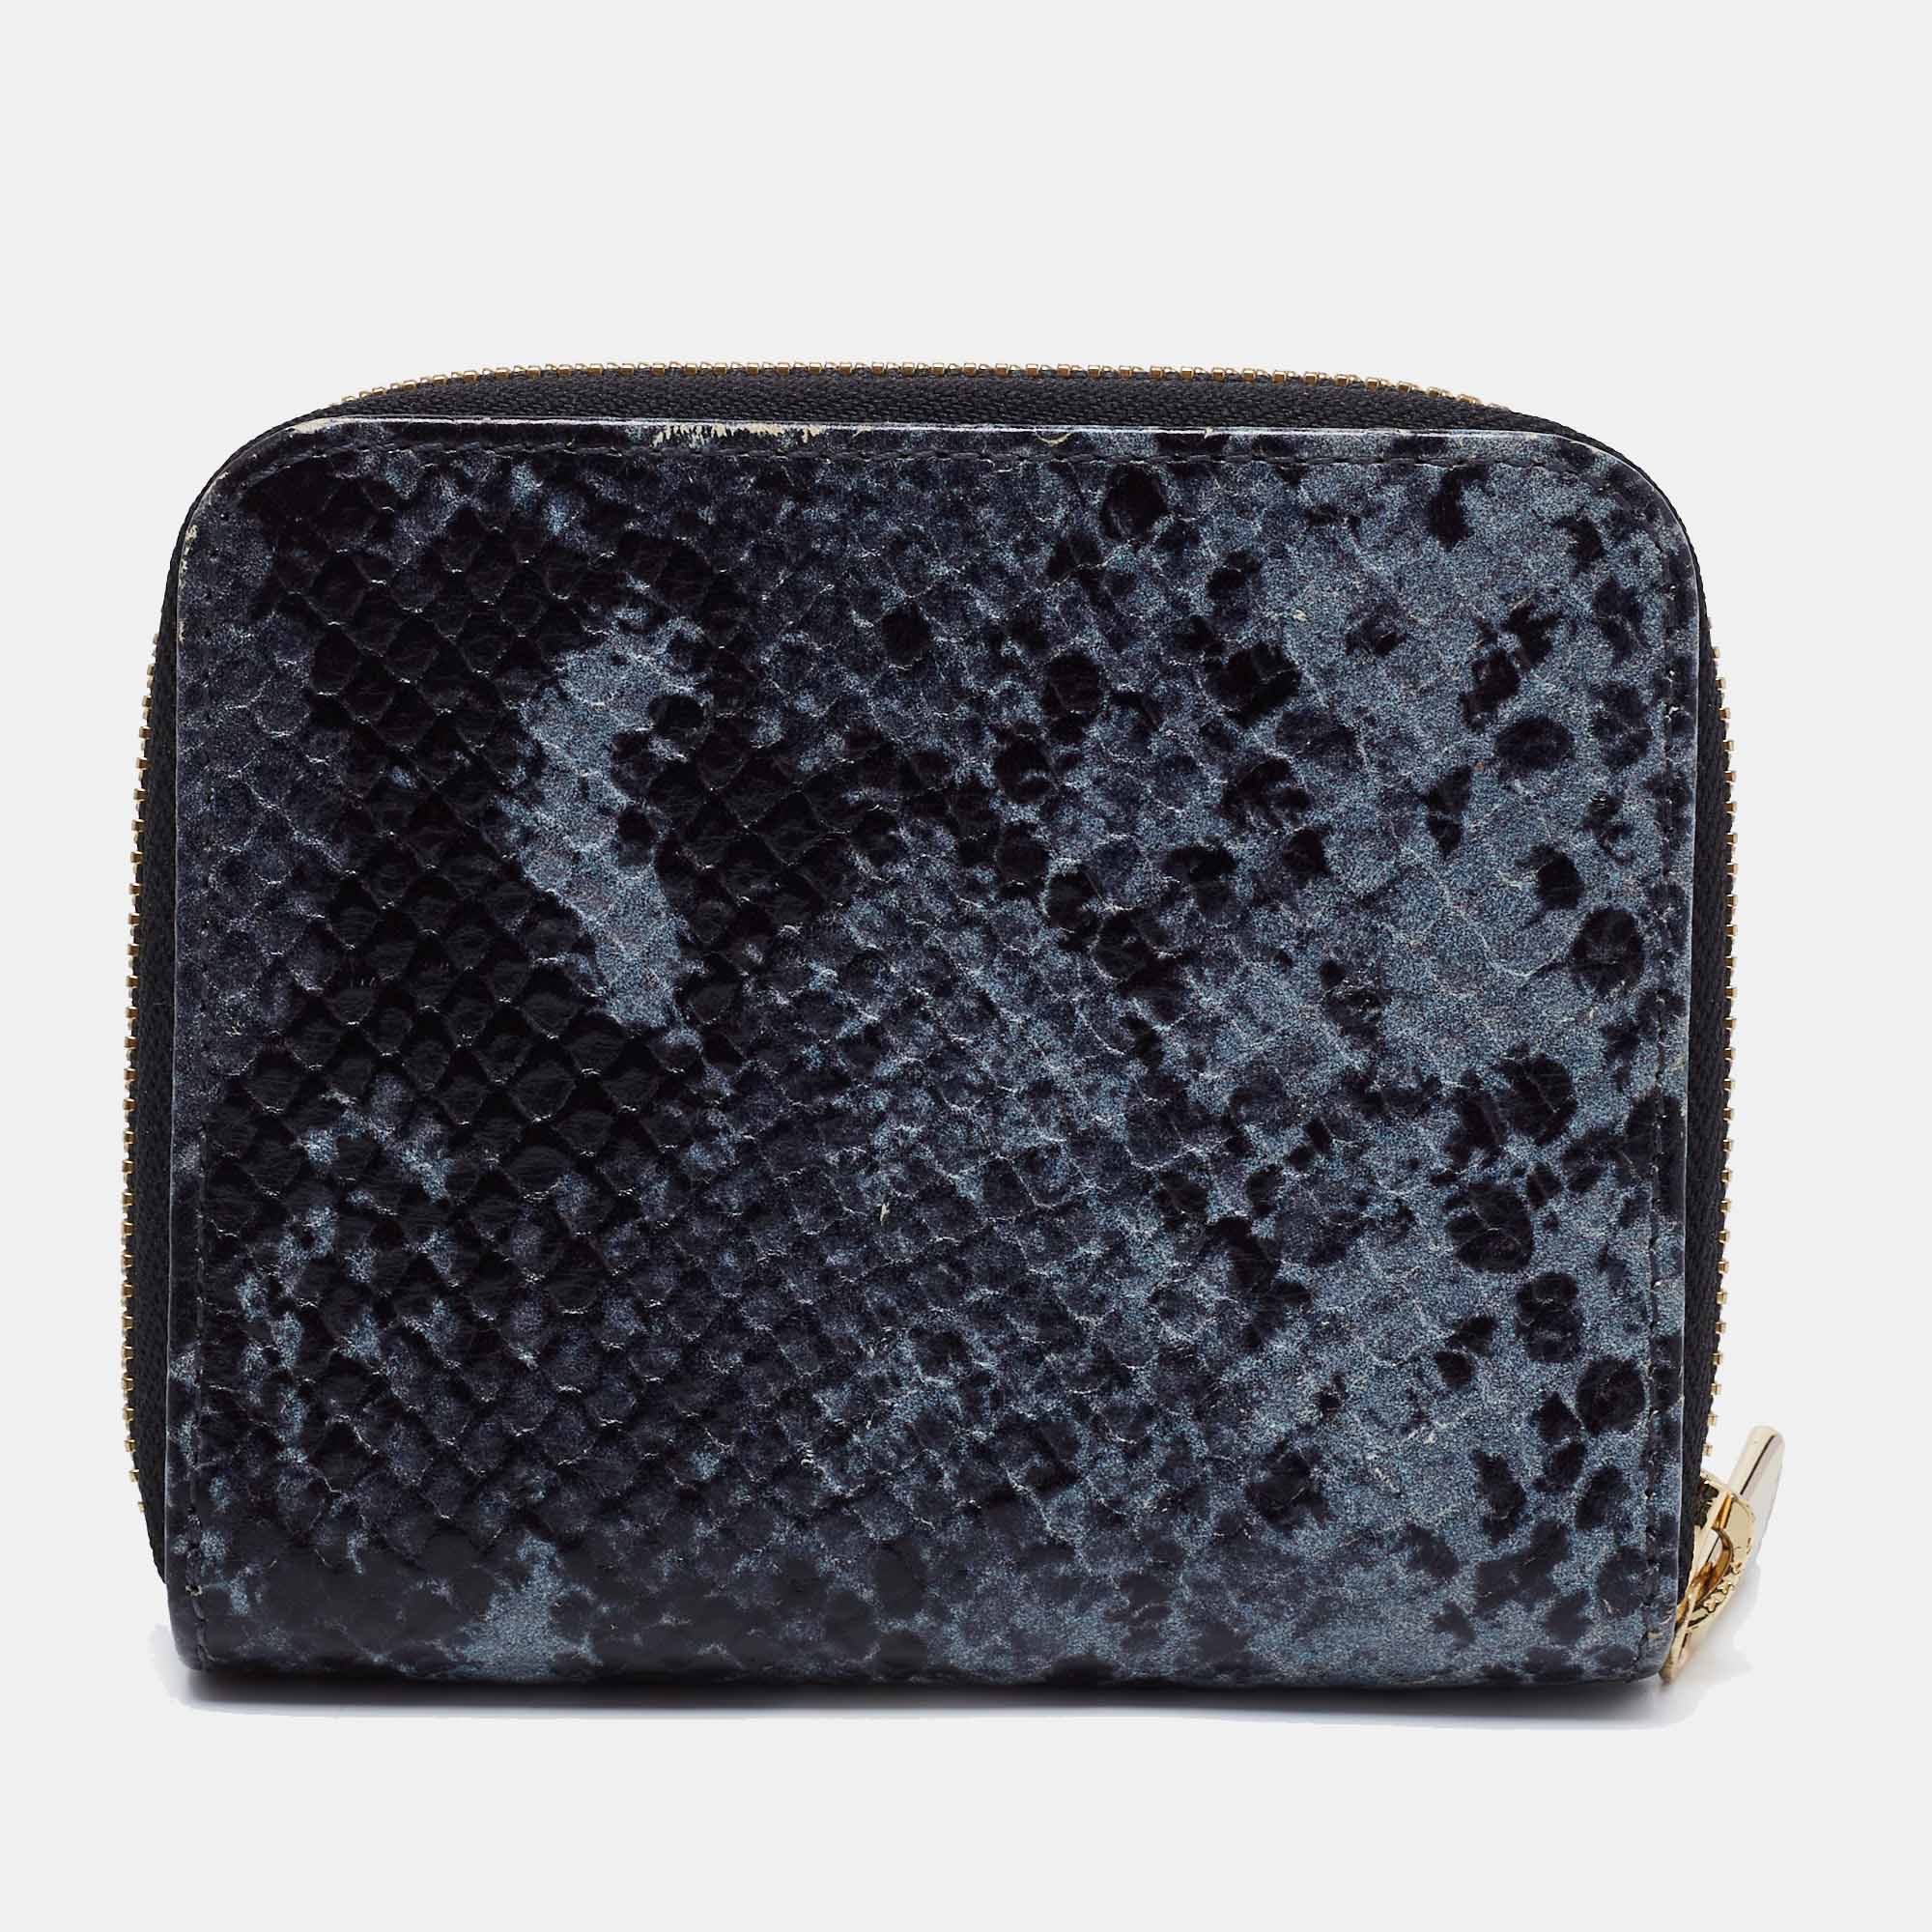 Furla Black/Grey Python Effect Leather Zip Around Wallet